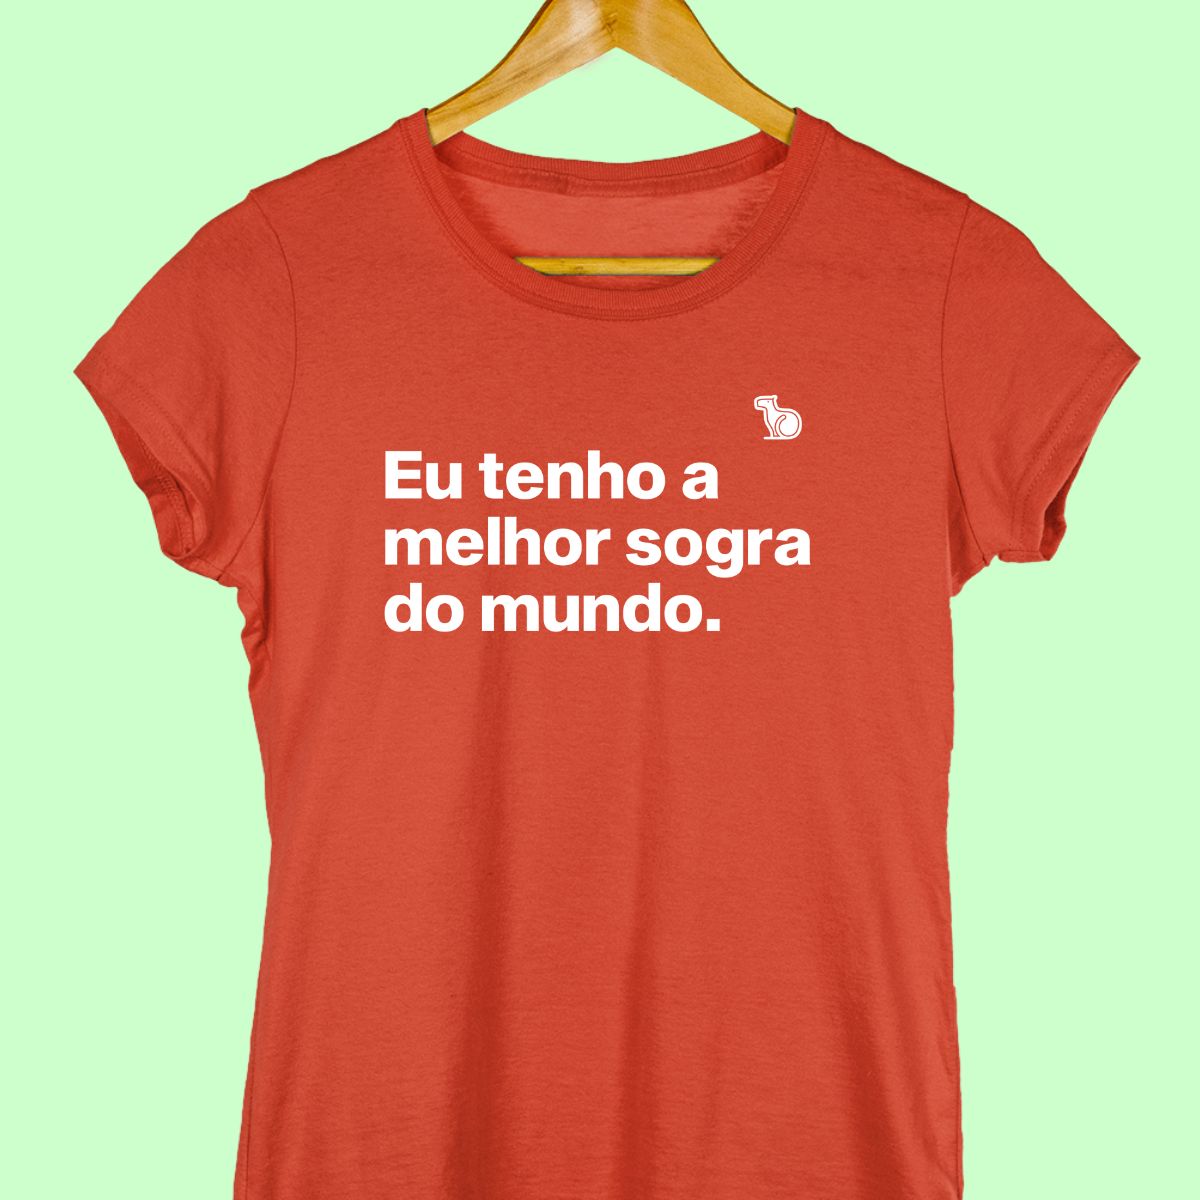 Camiseta com a frase "Eu tenho a melhor sogra do mundo." feminina feminina vermelha.